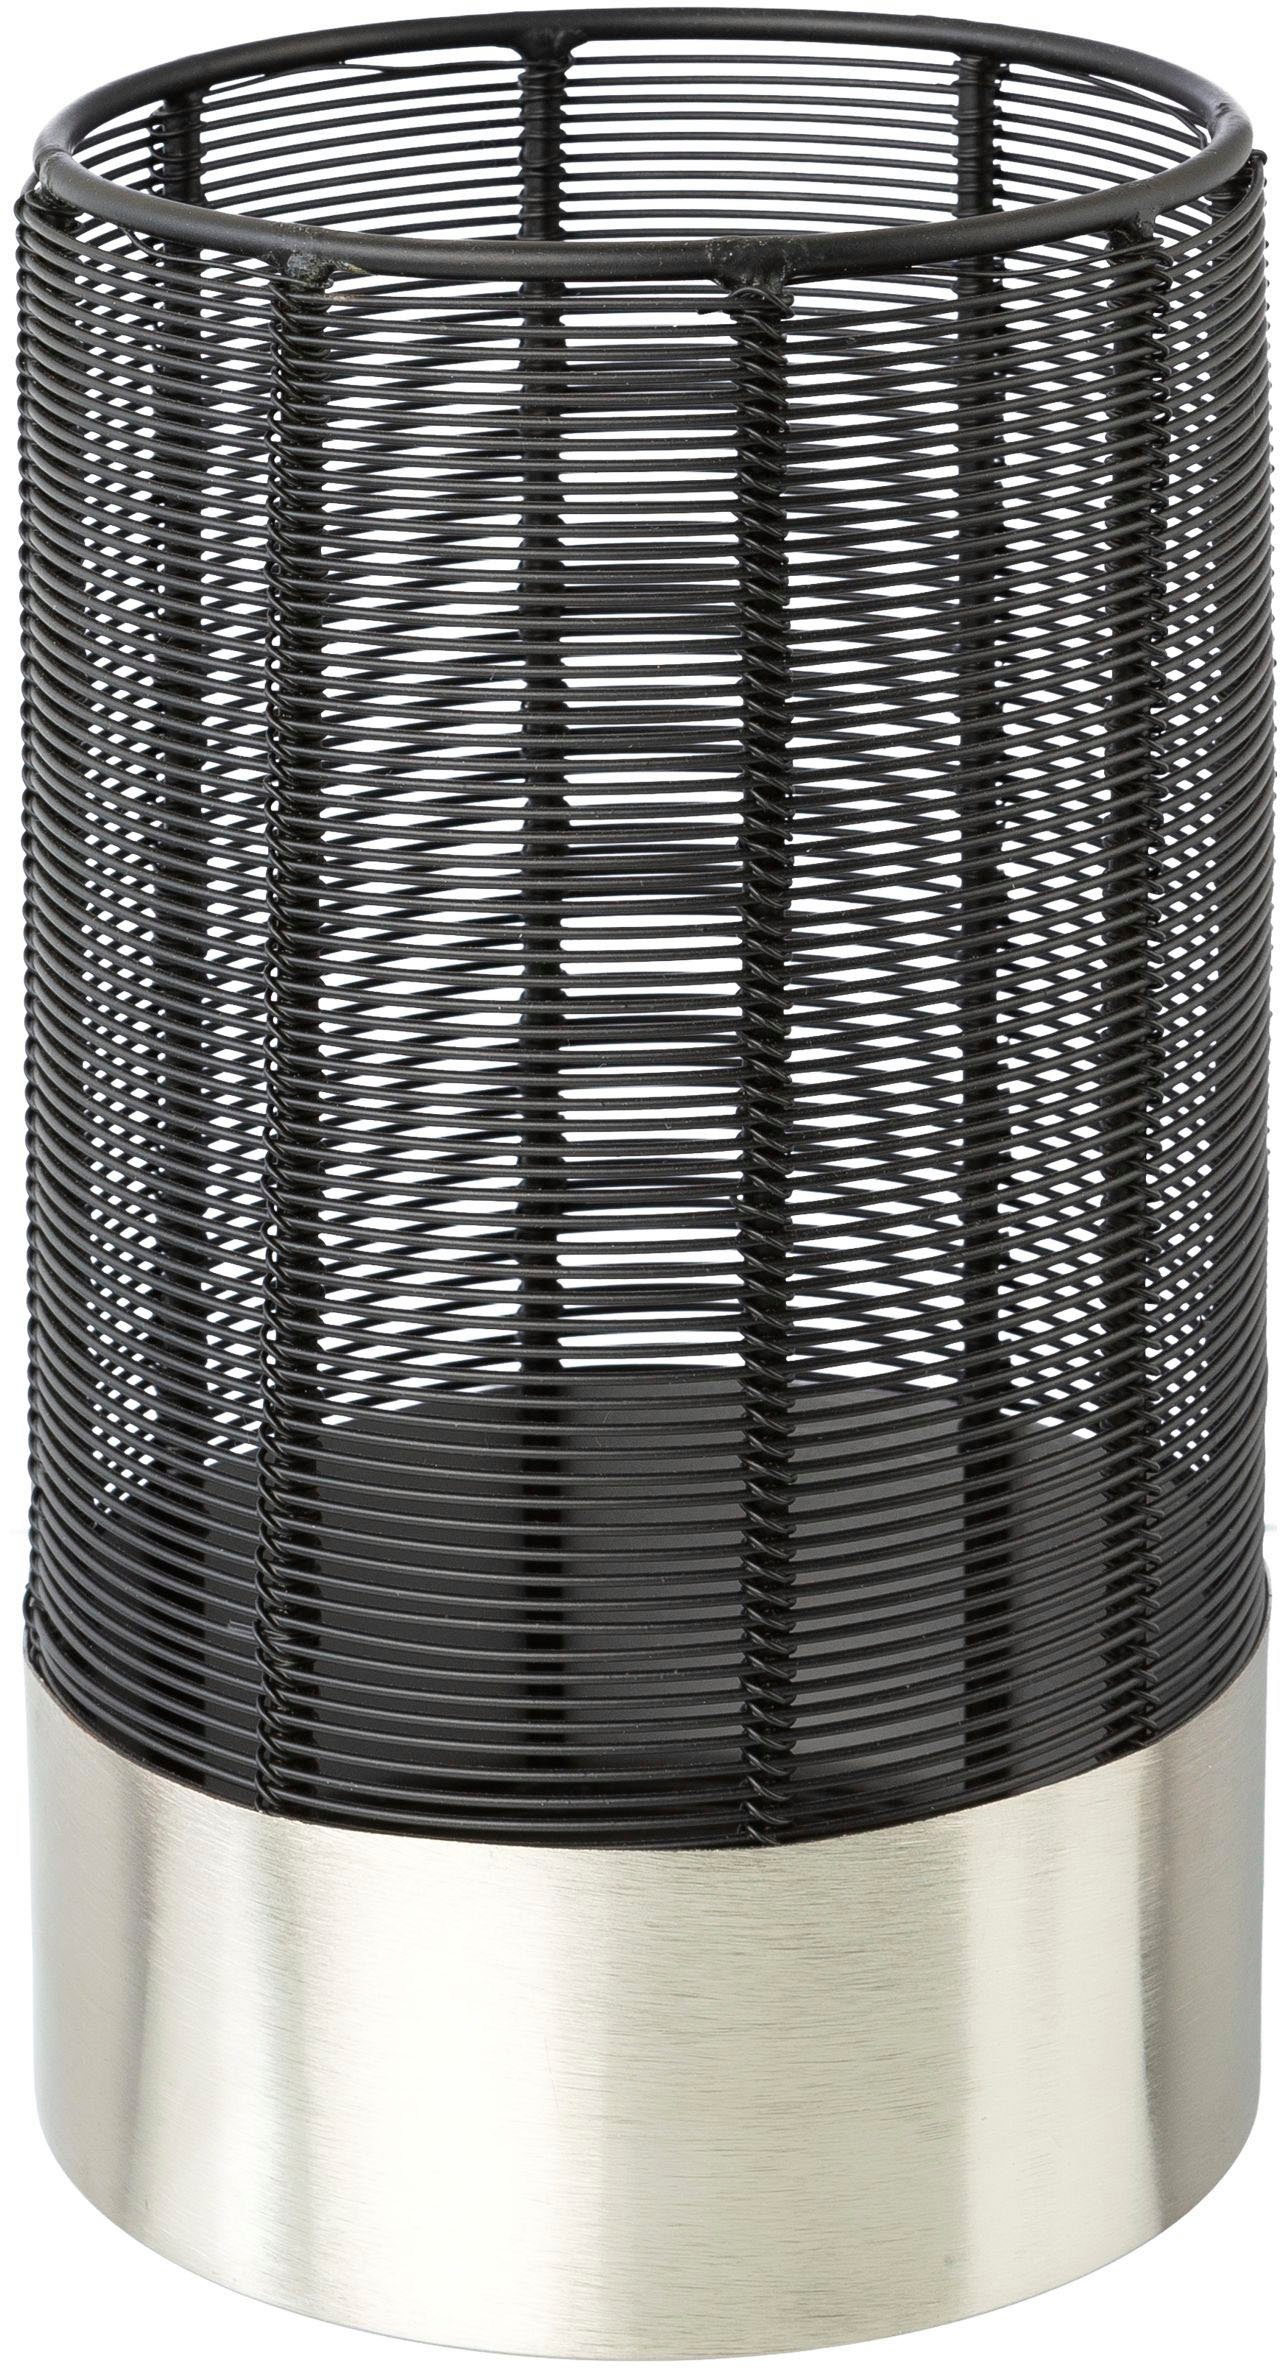 Leonique Windlicht Kerzenhalter Alienor (1 St), aus Metall, mit Draht-Struktur schwarz-silberfarben